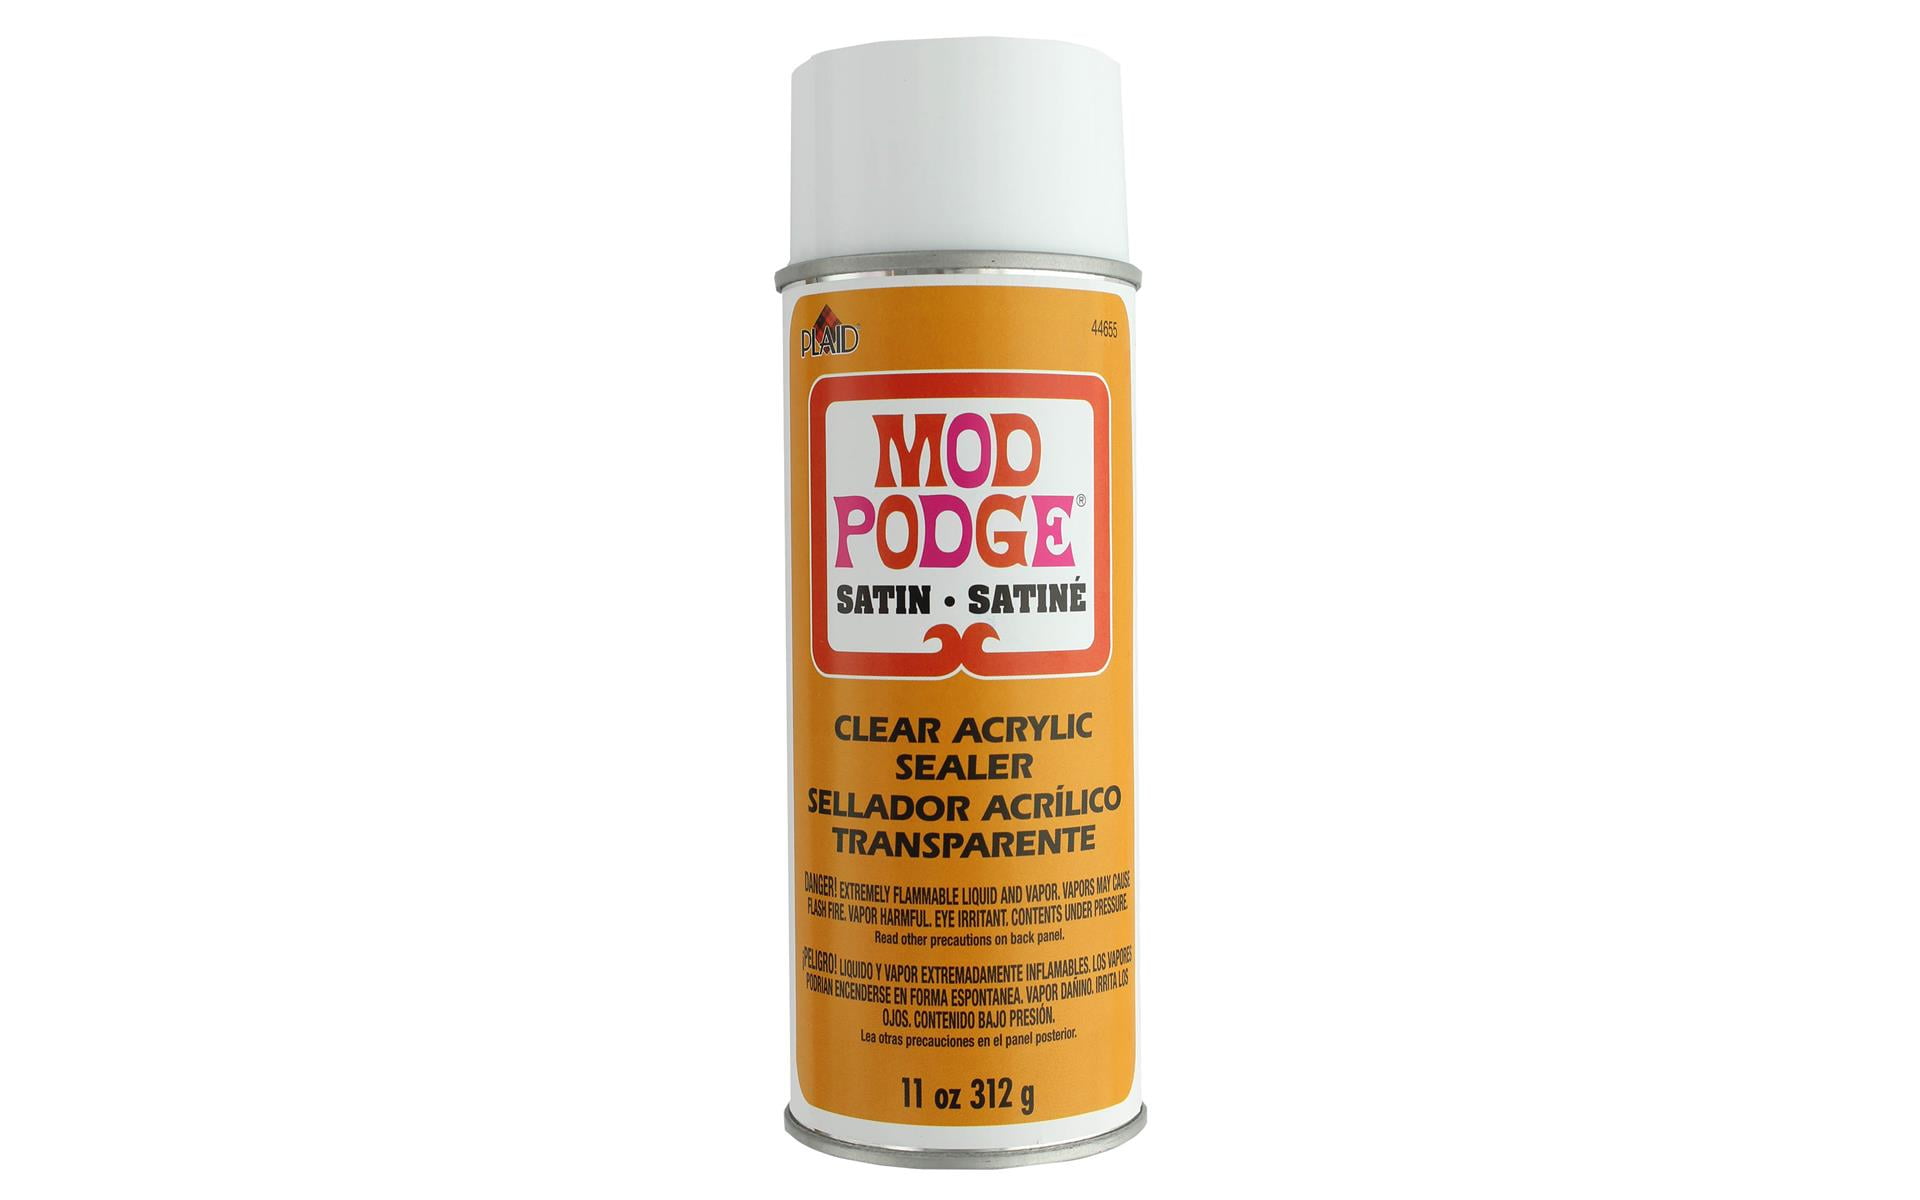 Plaid Mod Podge Clear Acrylic Sealer, Gloss 